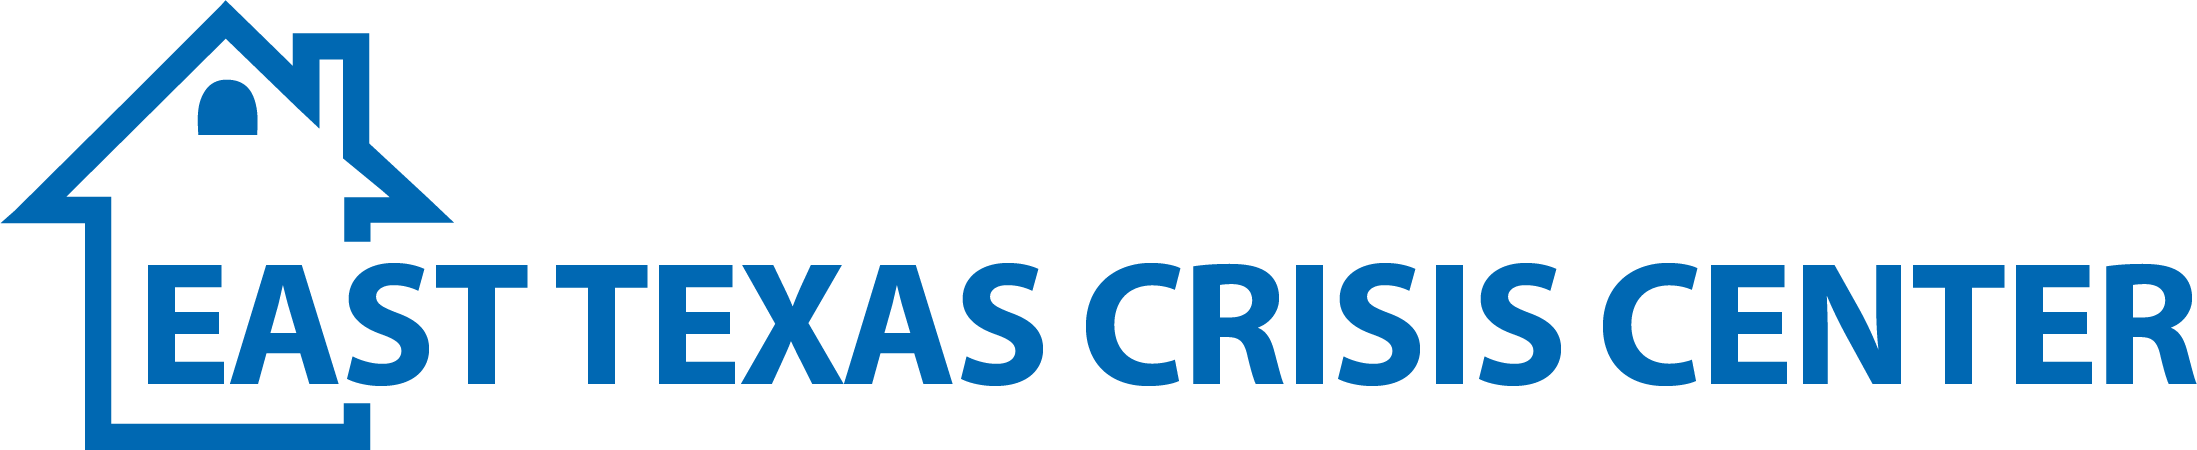 East Texas Crisis Center